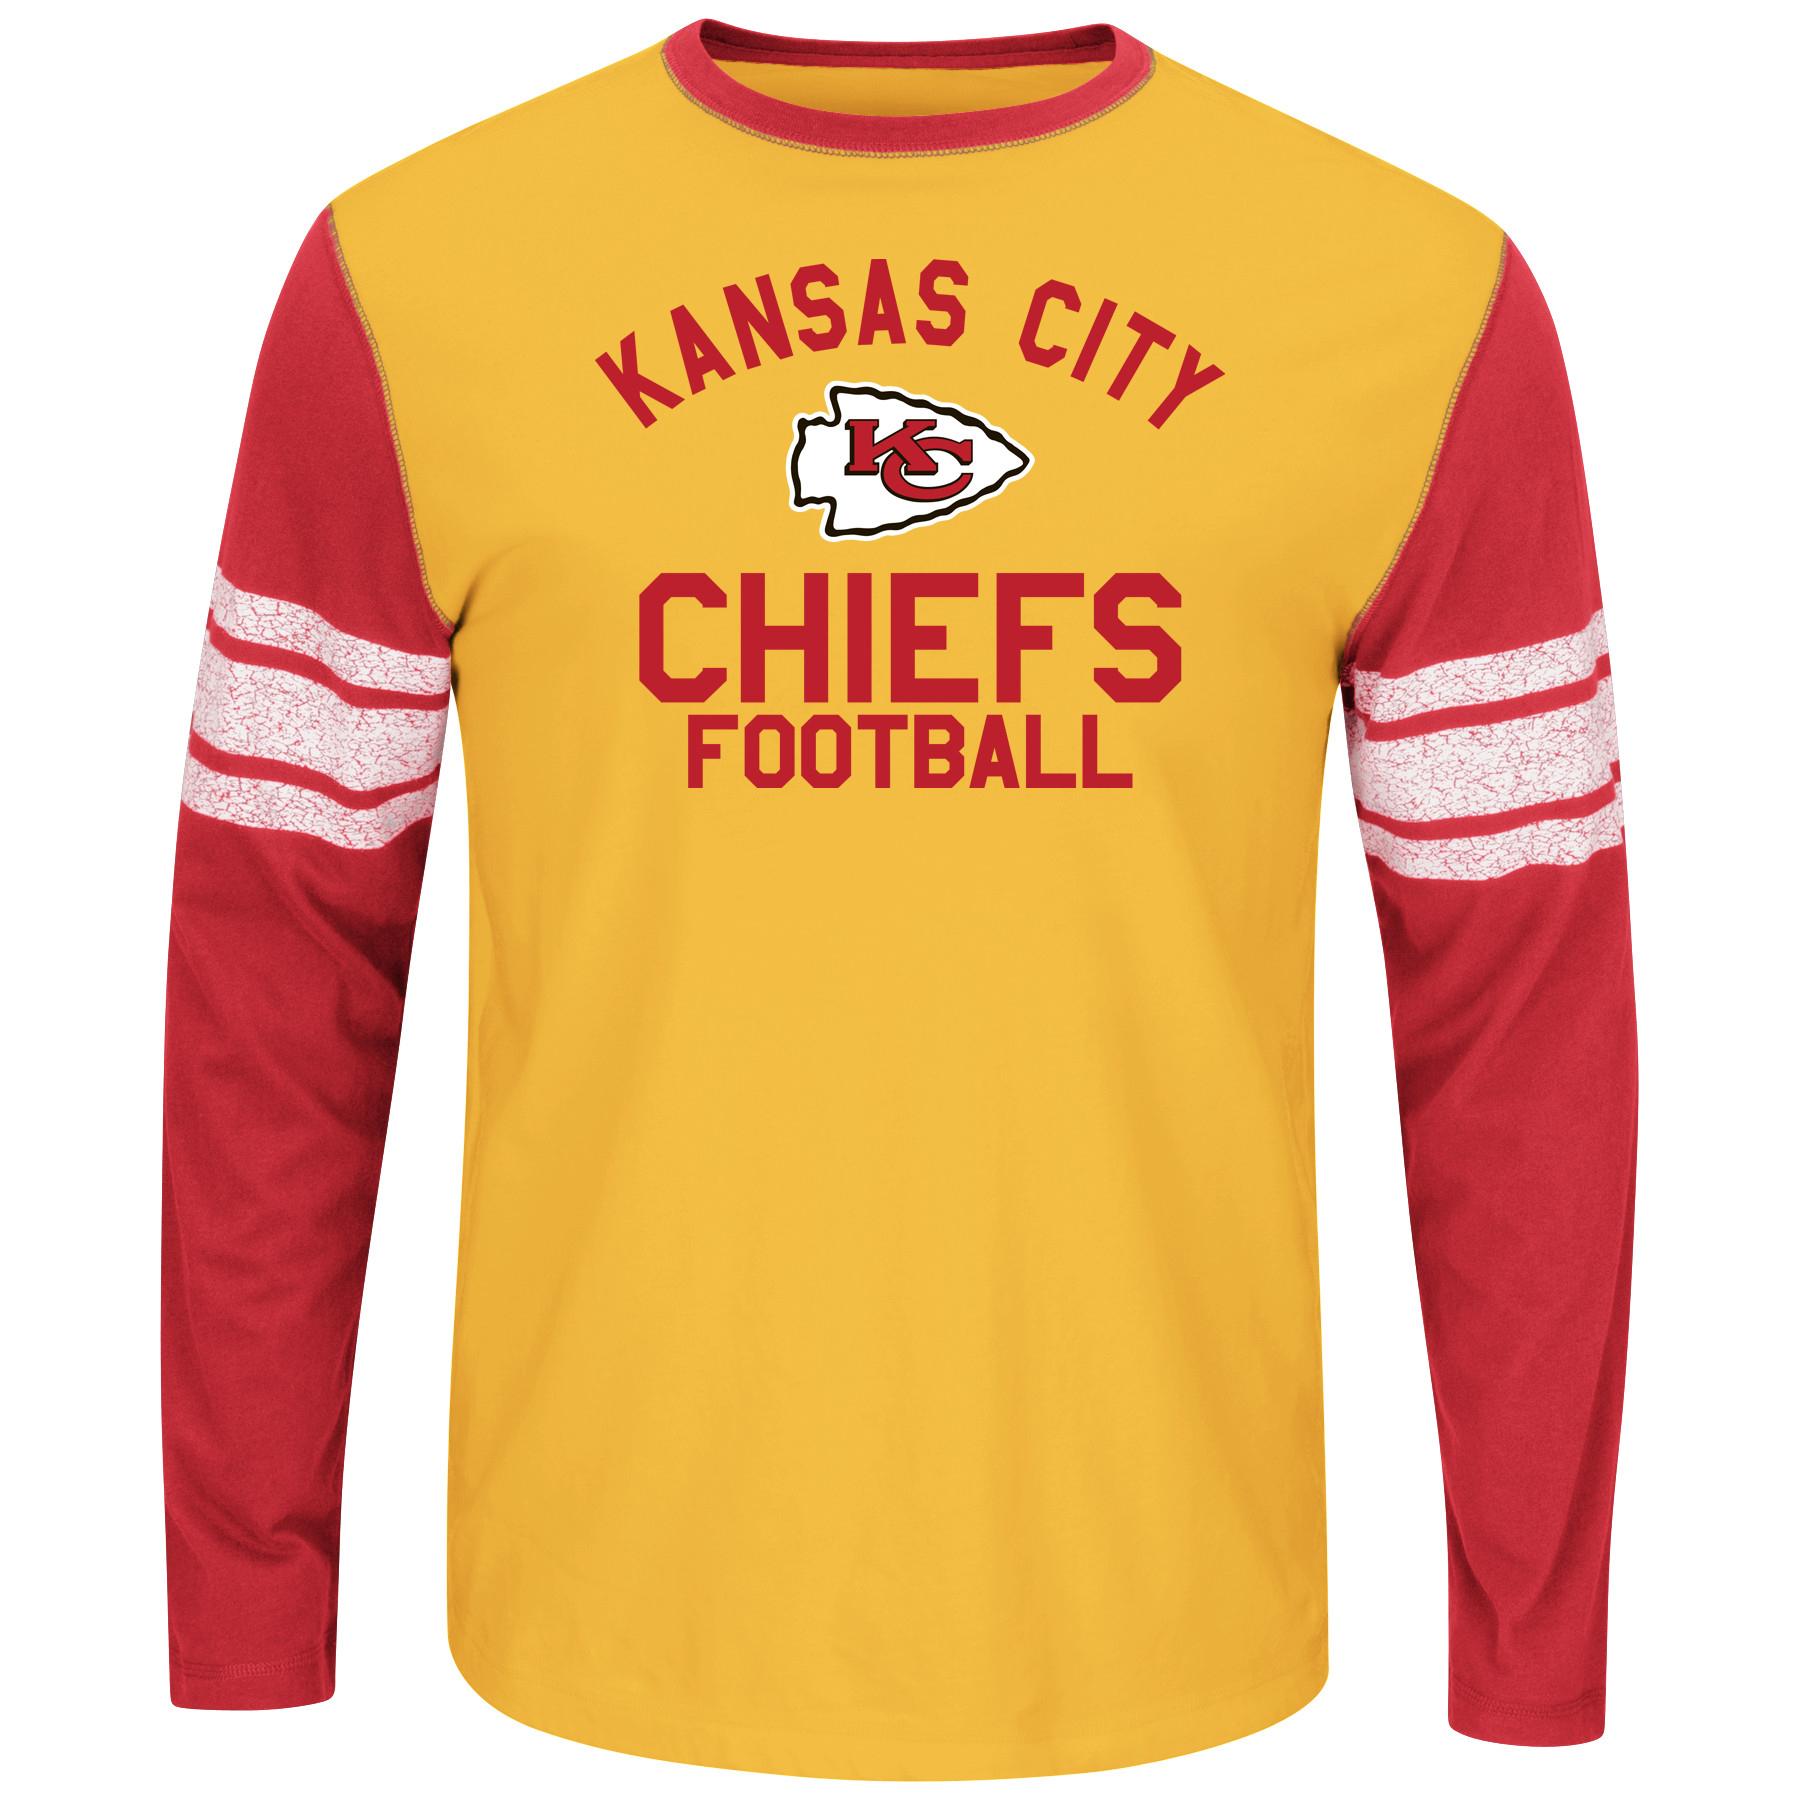 NFL Men's Big & Tall T-Shirt - Kansas City Chiefs